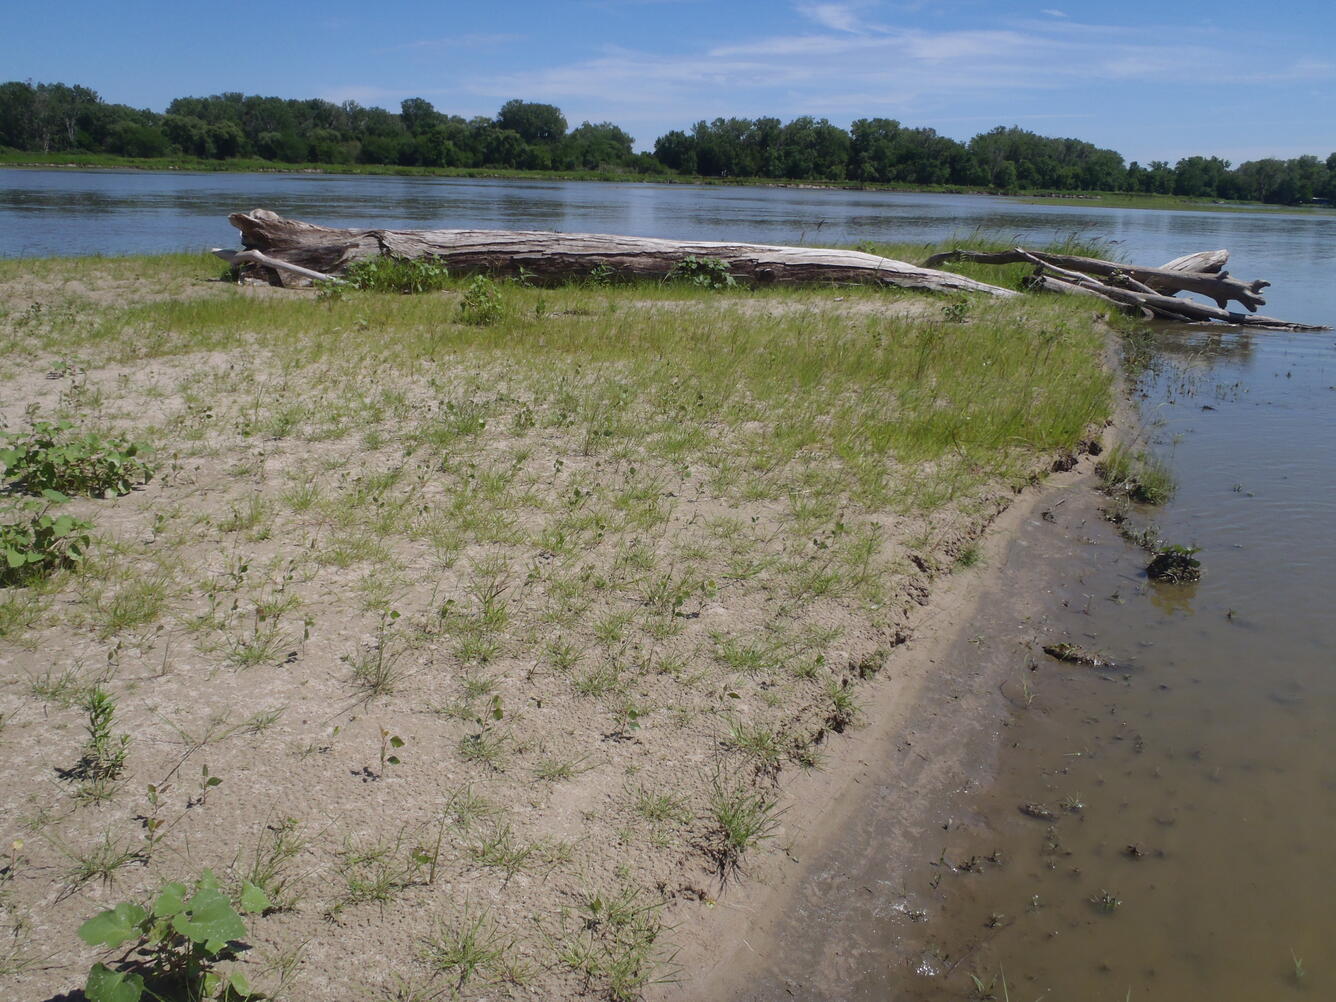 Sandbar in the lower Platte River, NE